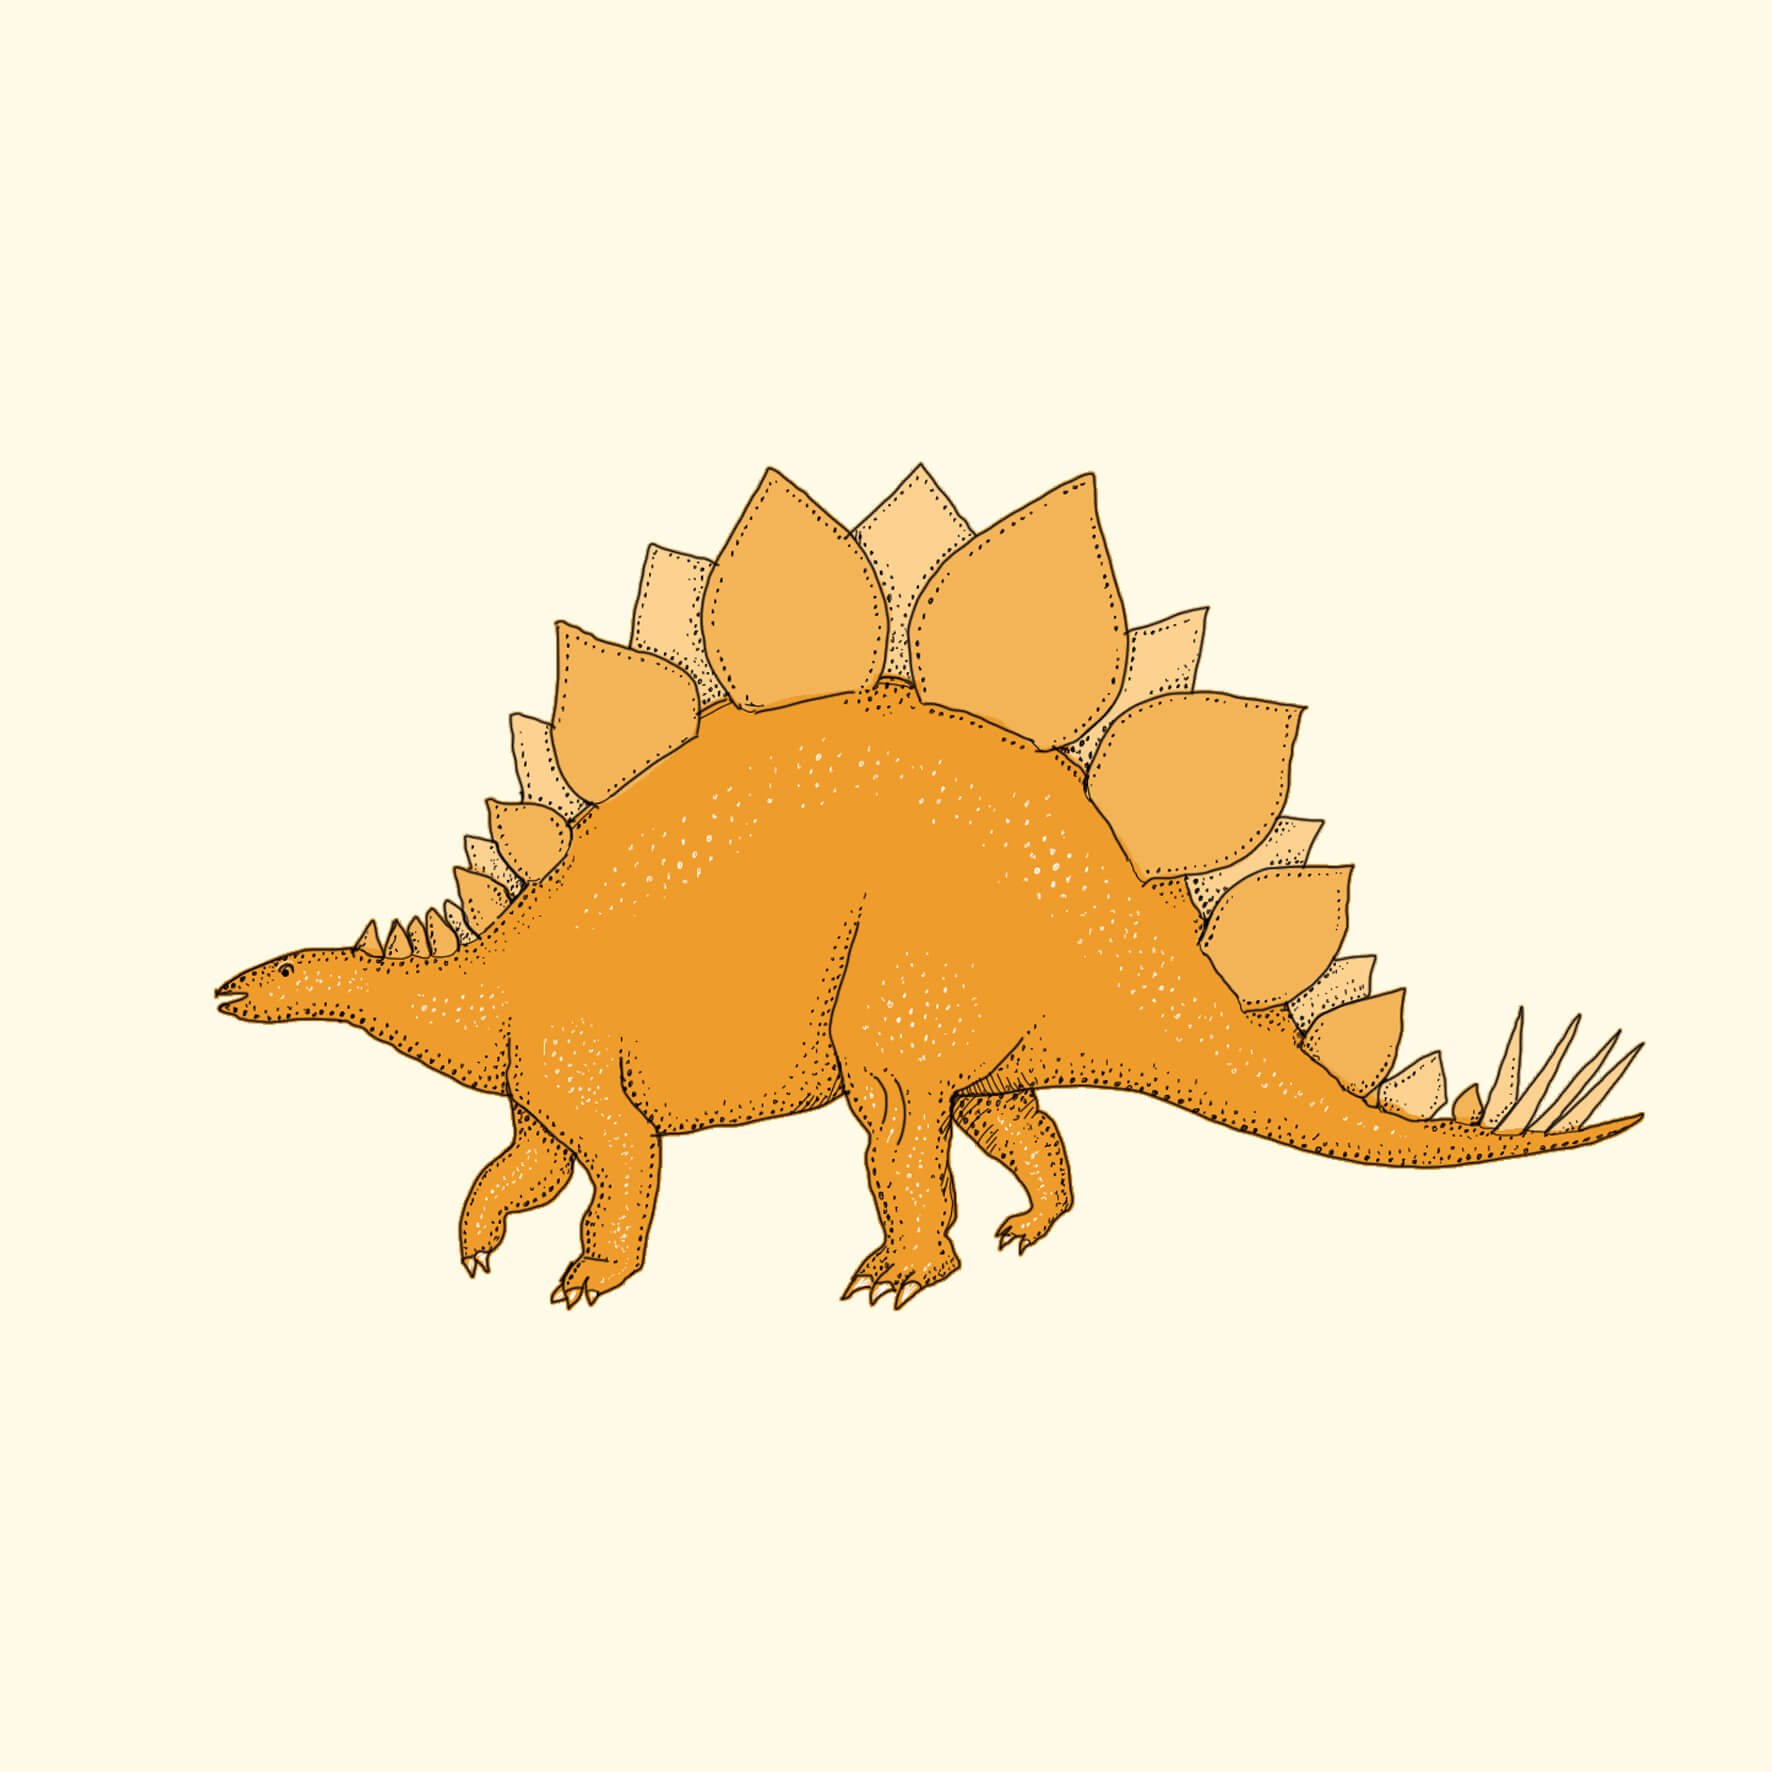 stegasaurus dinosaur illustration.jpg